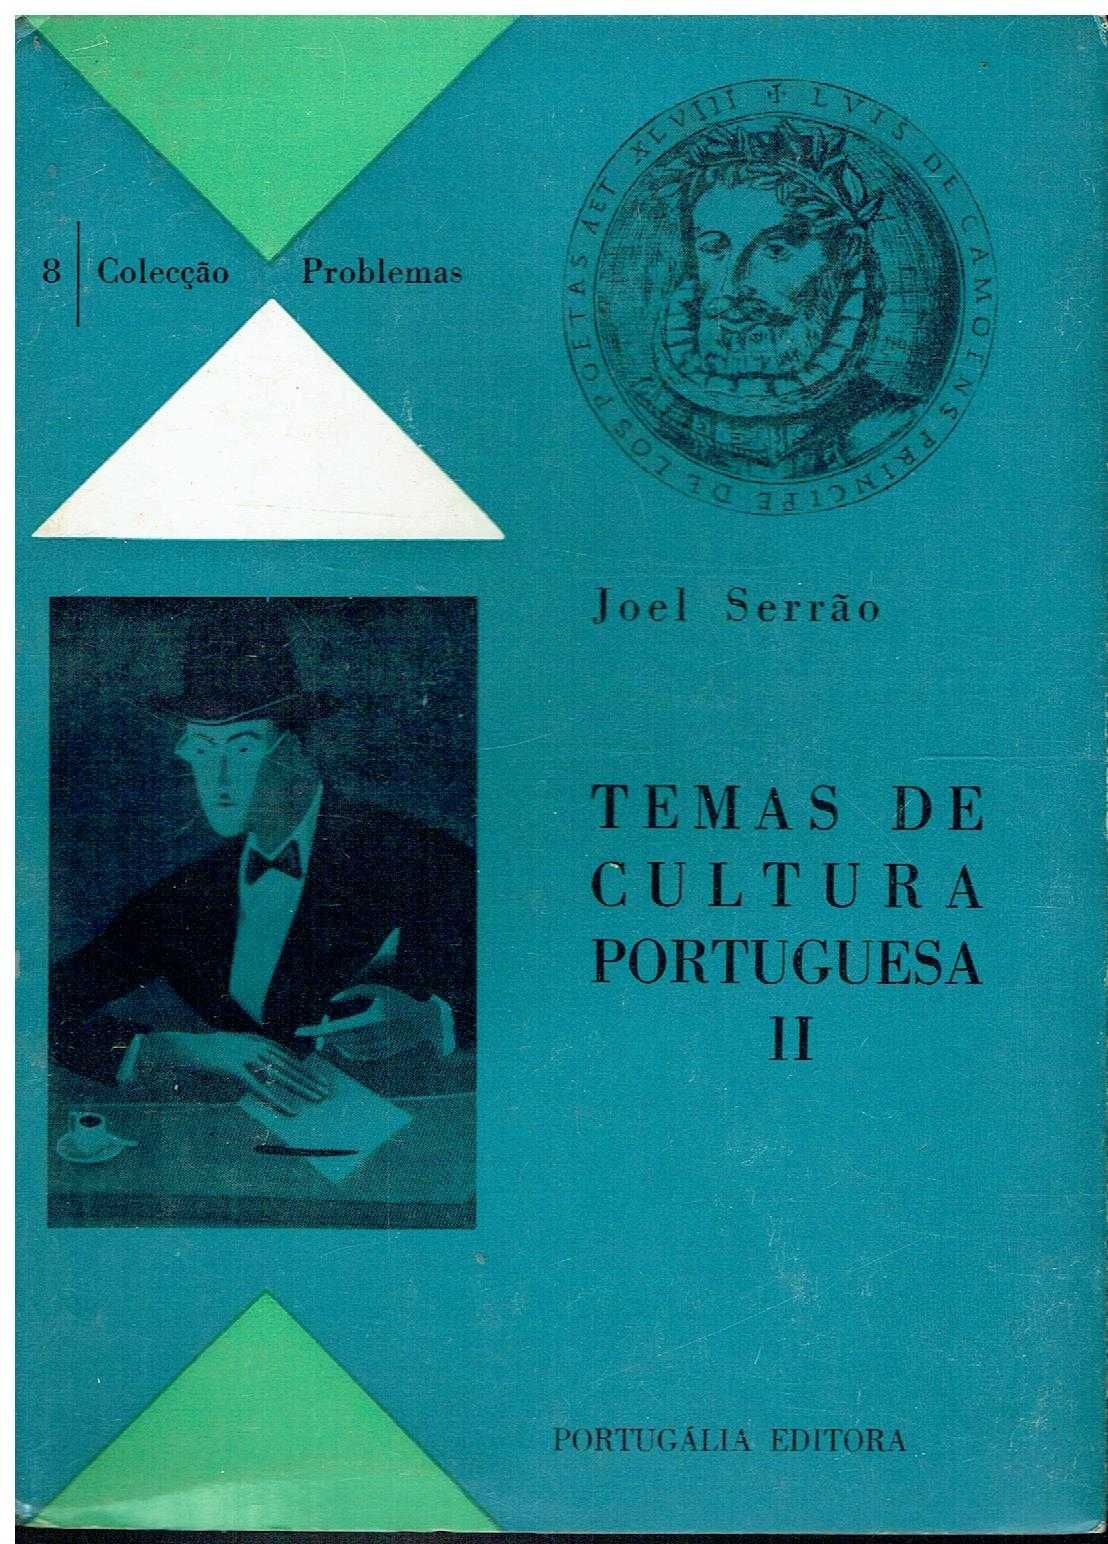 10317

Temas de cultura portuguesa II 
de Joel Serrão.